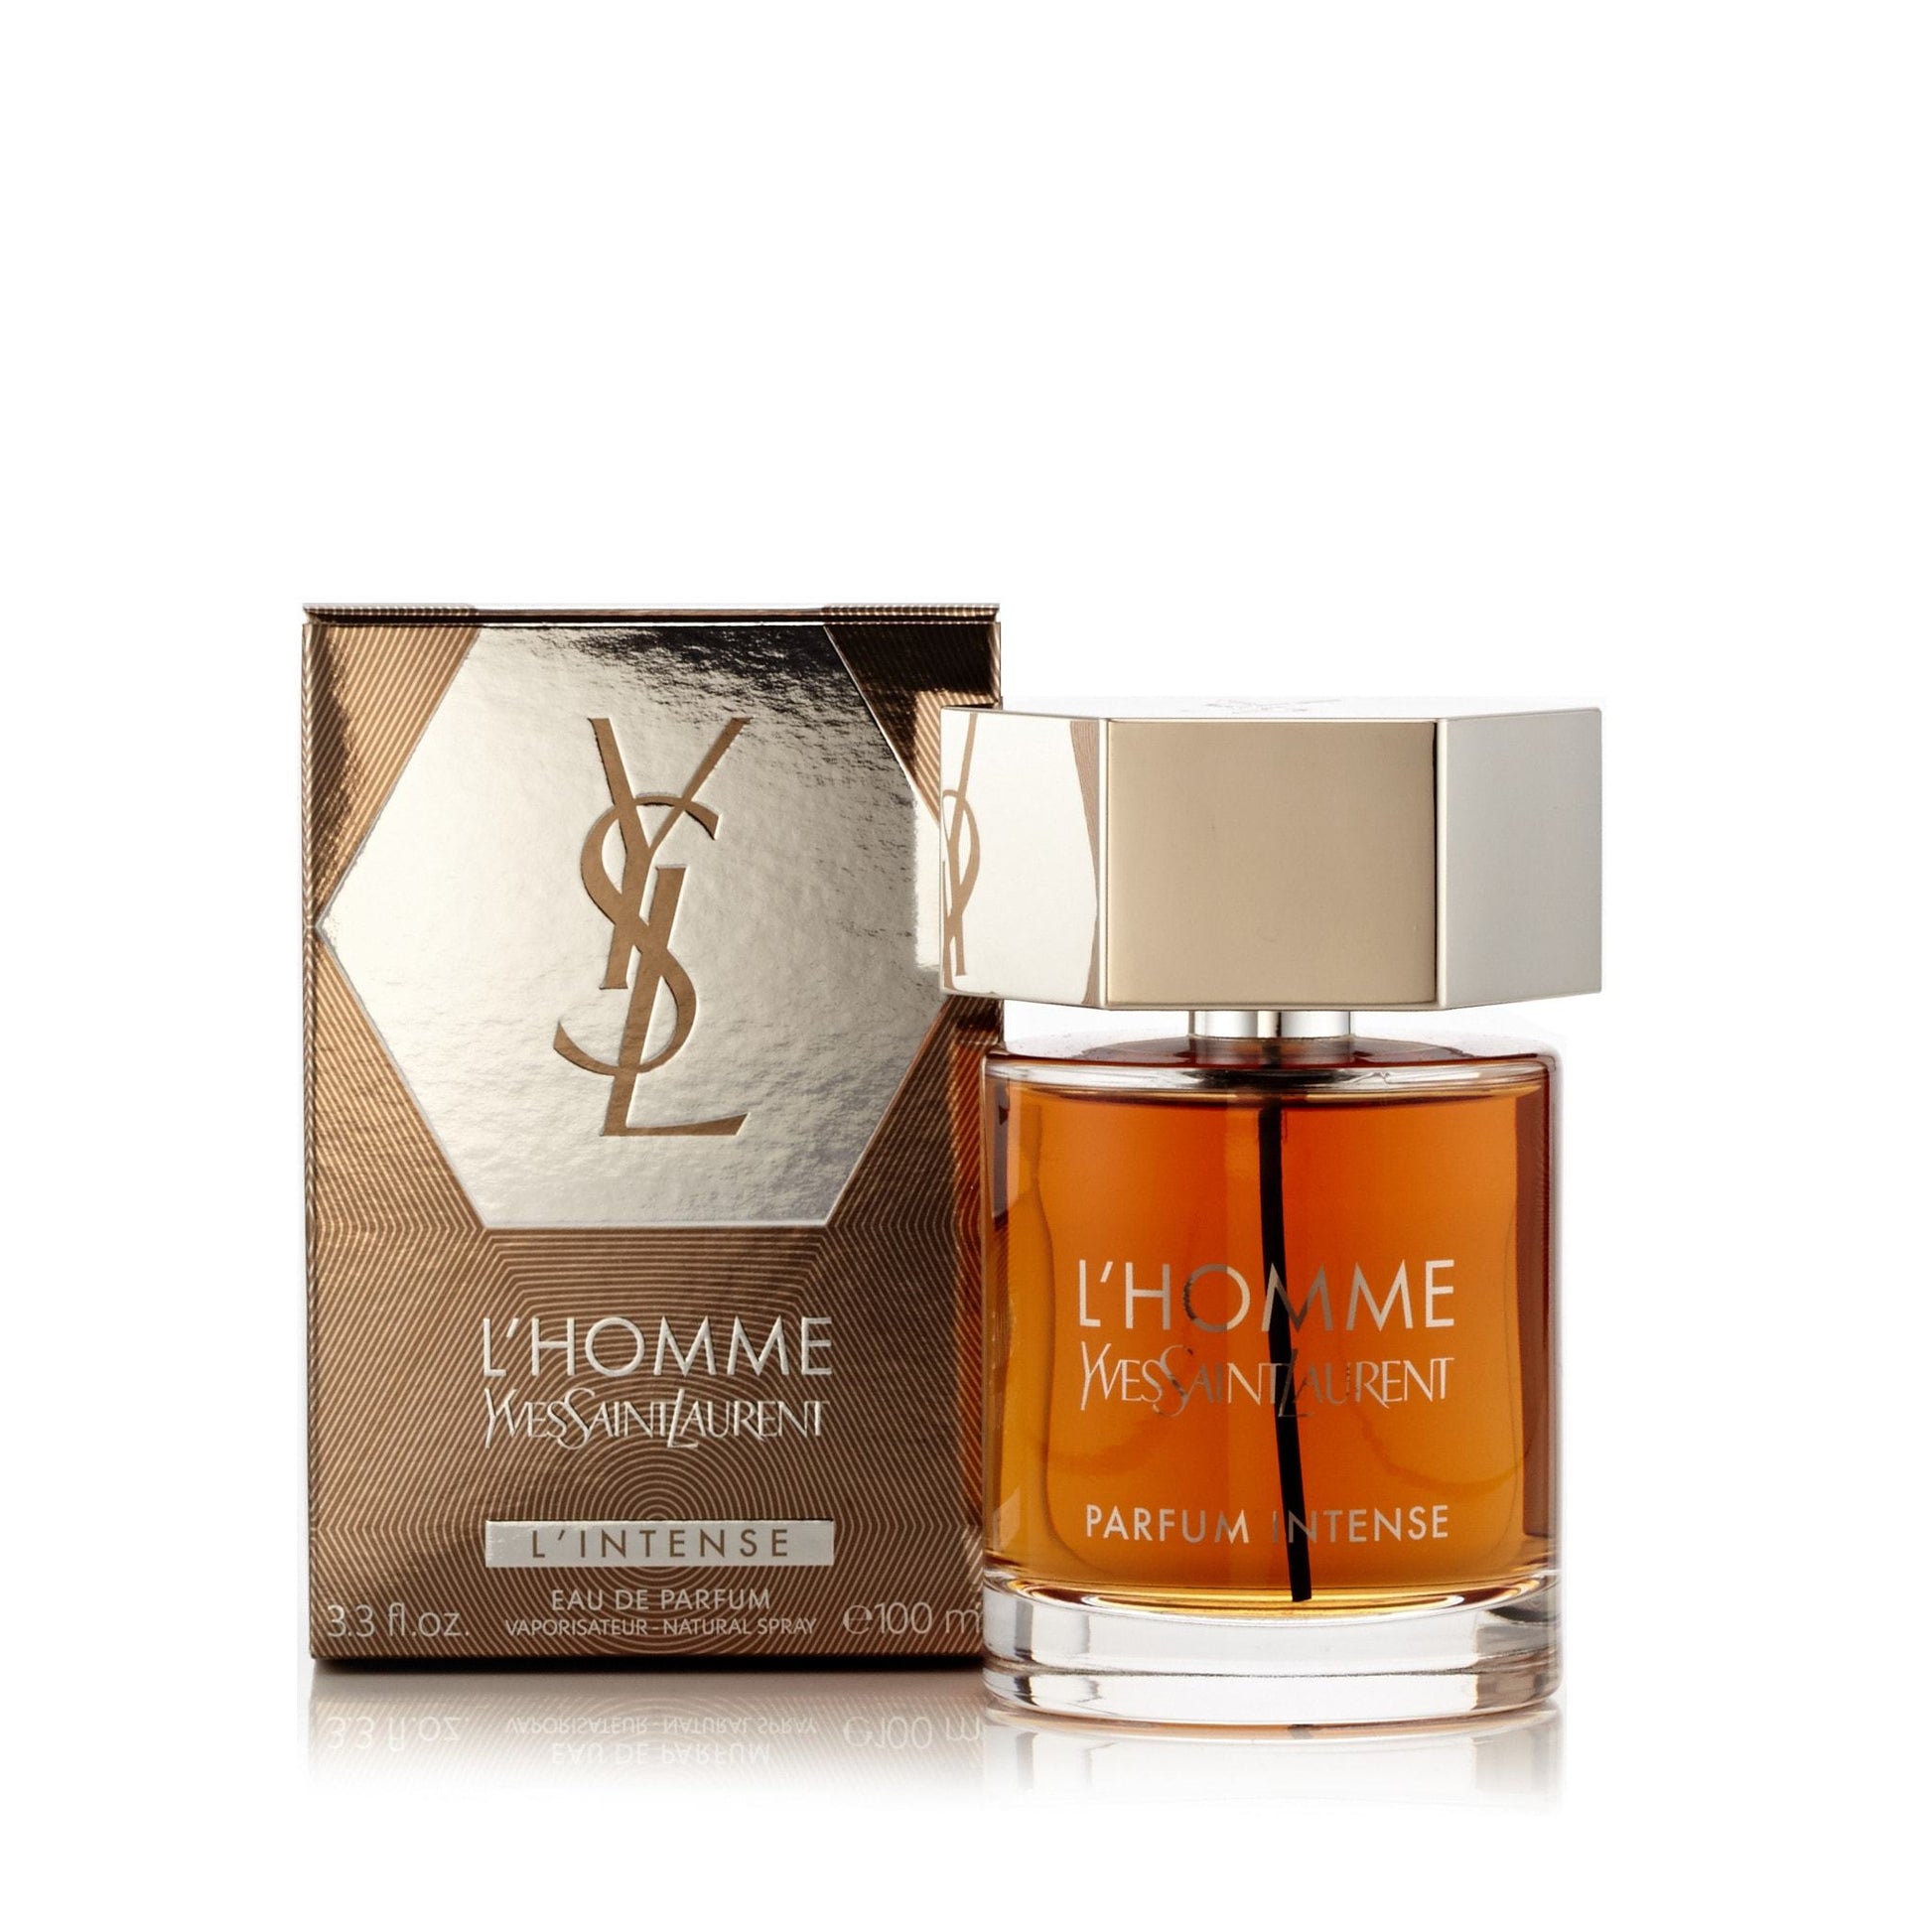 L'Homme L'Intense Eau de Parfum Spray for Men by Yves Saint Laurent, Product image 1